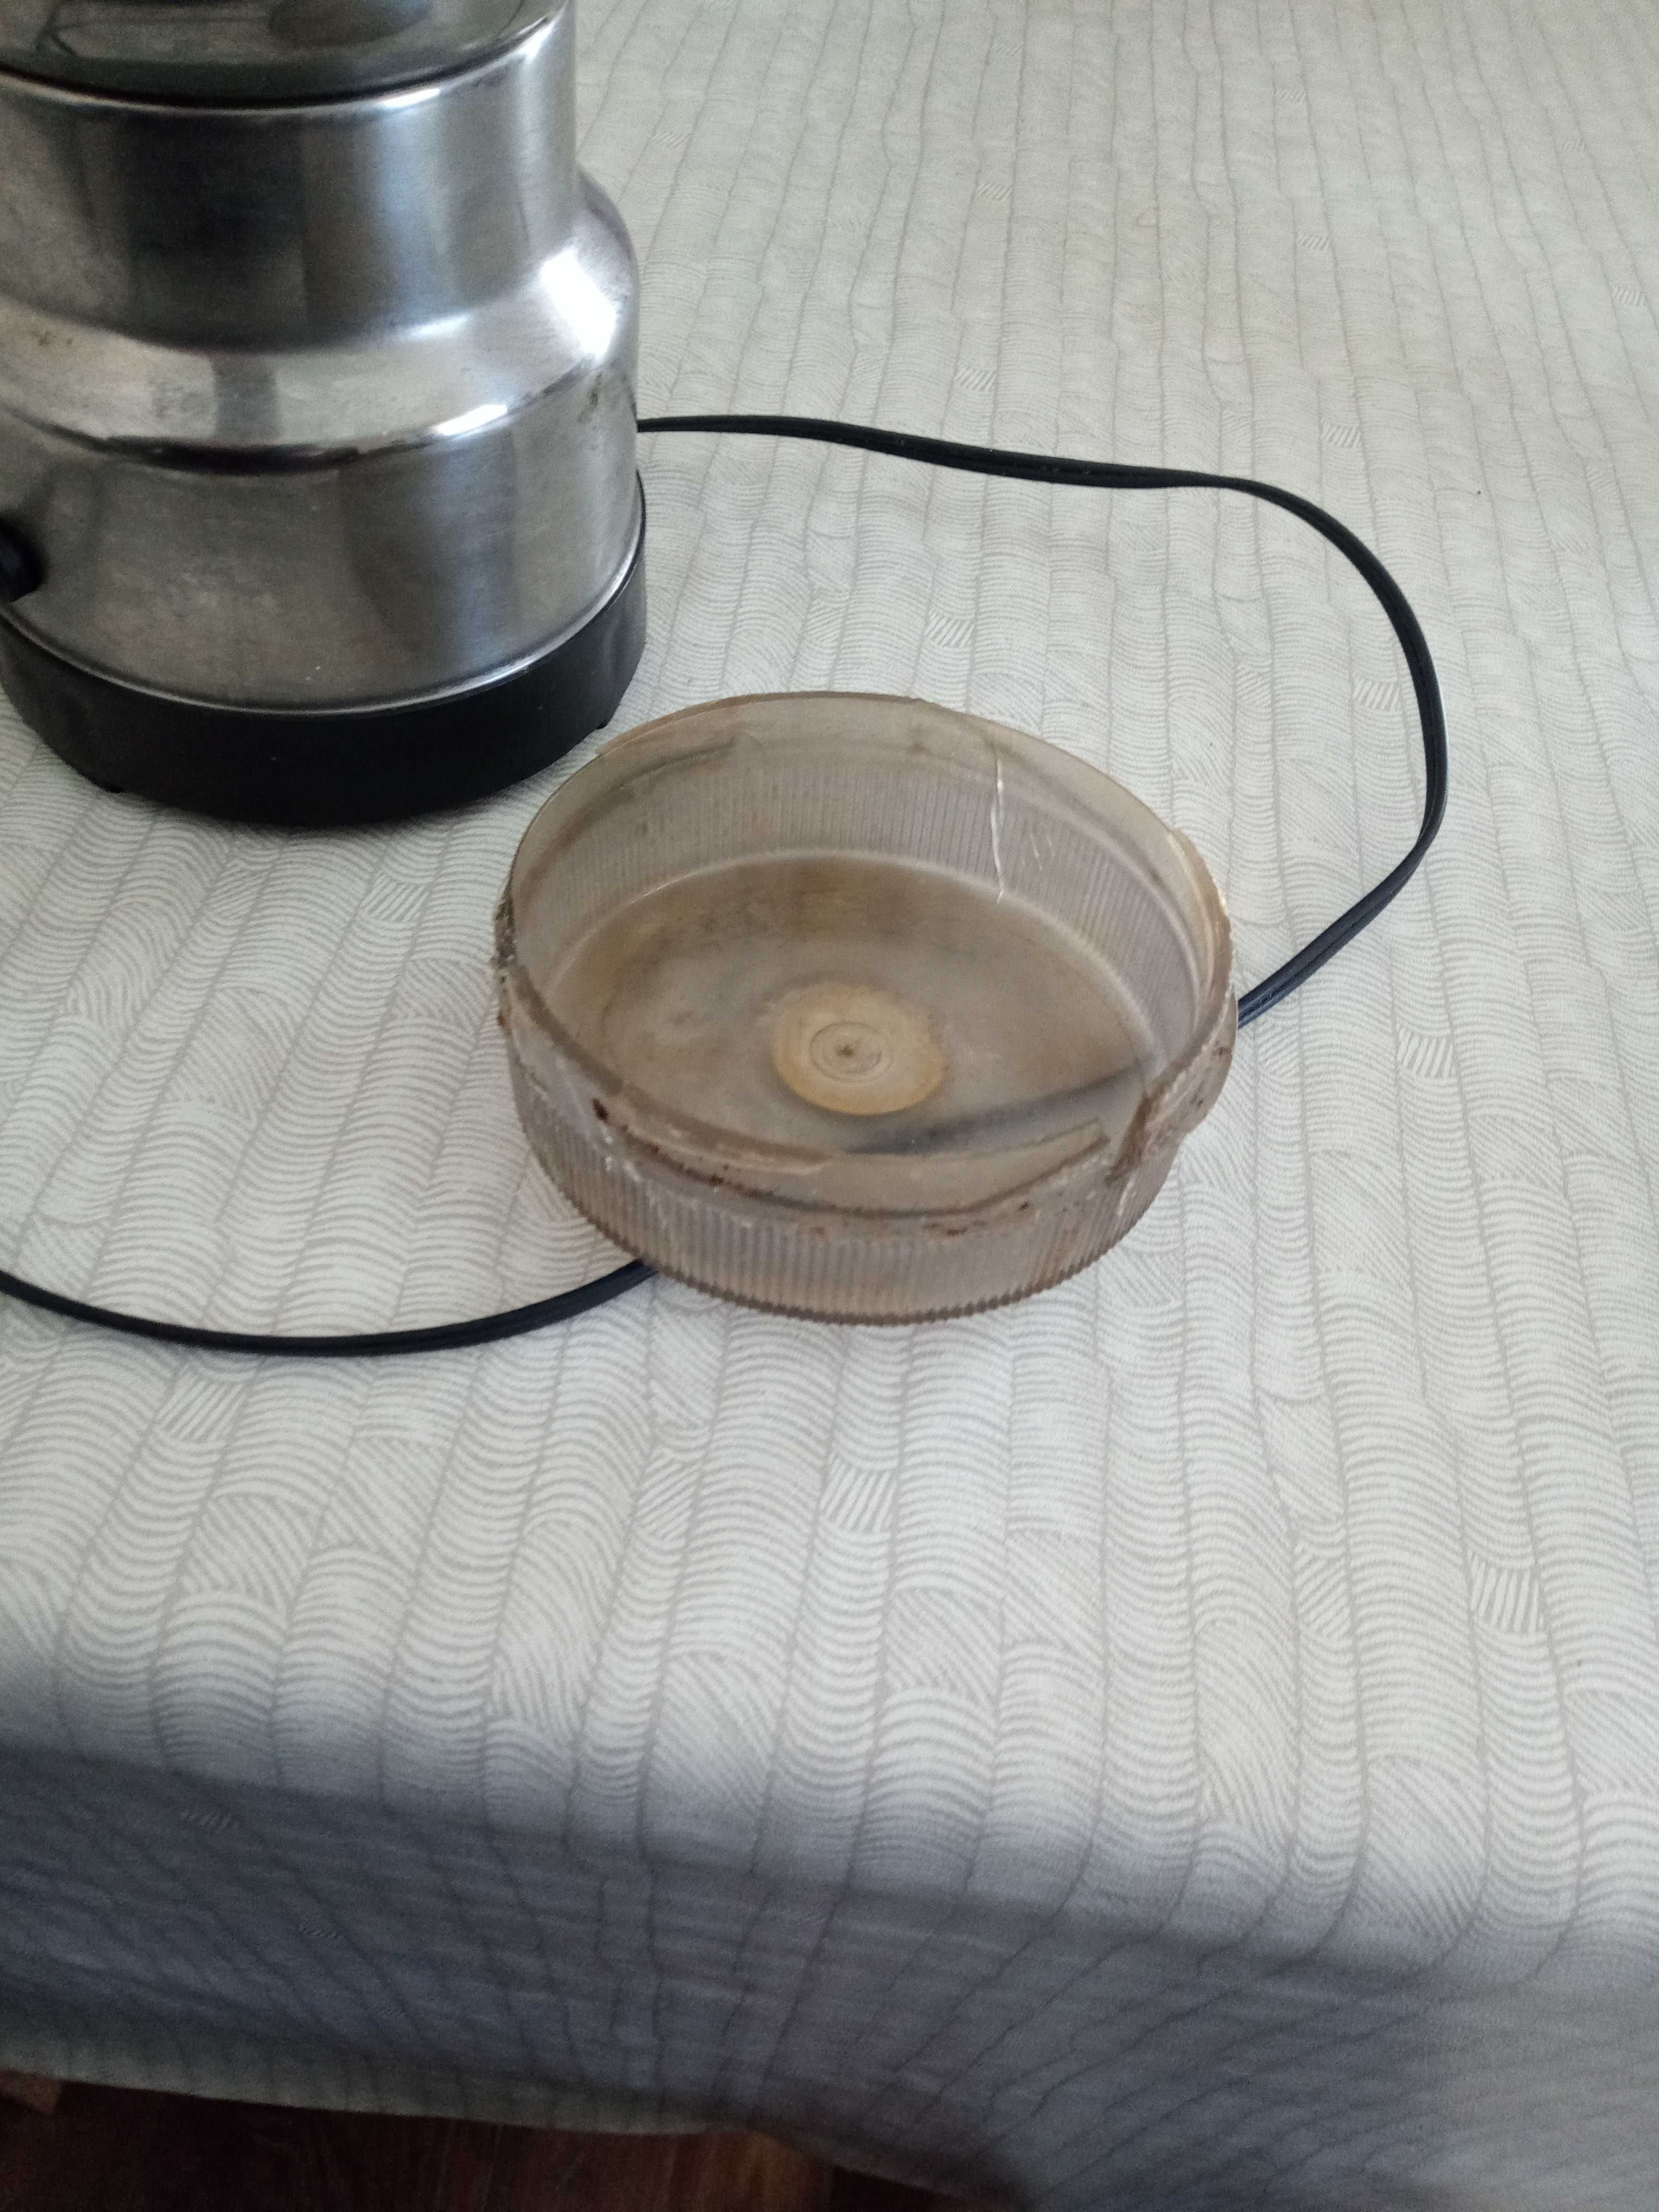 Mașină de măcinat zahar cafea in stare foarte bună capacul e crapat